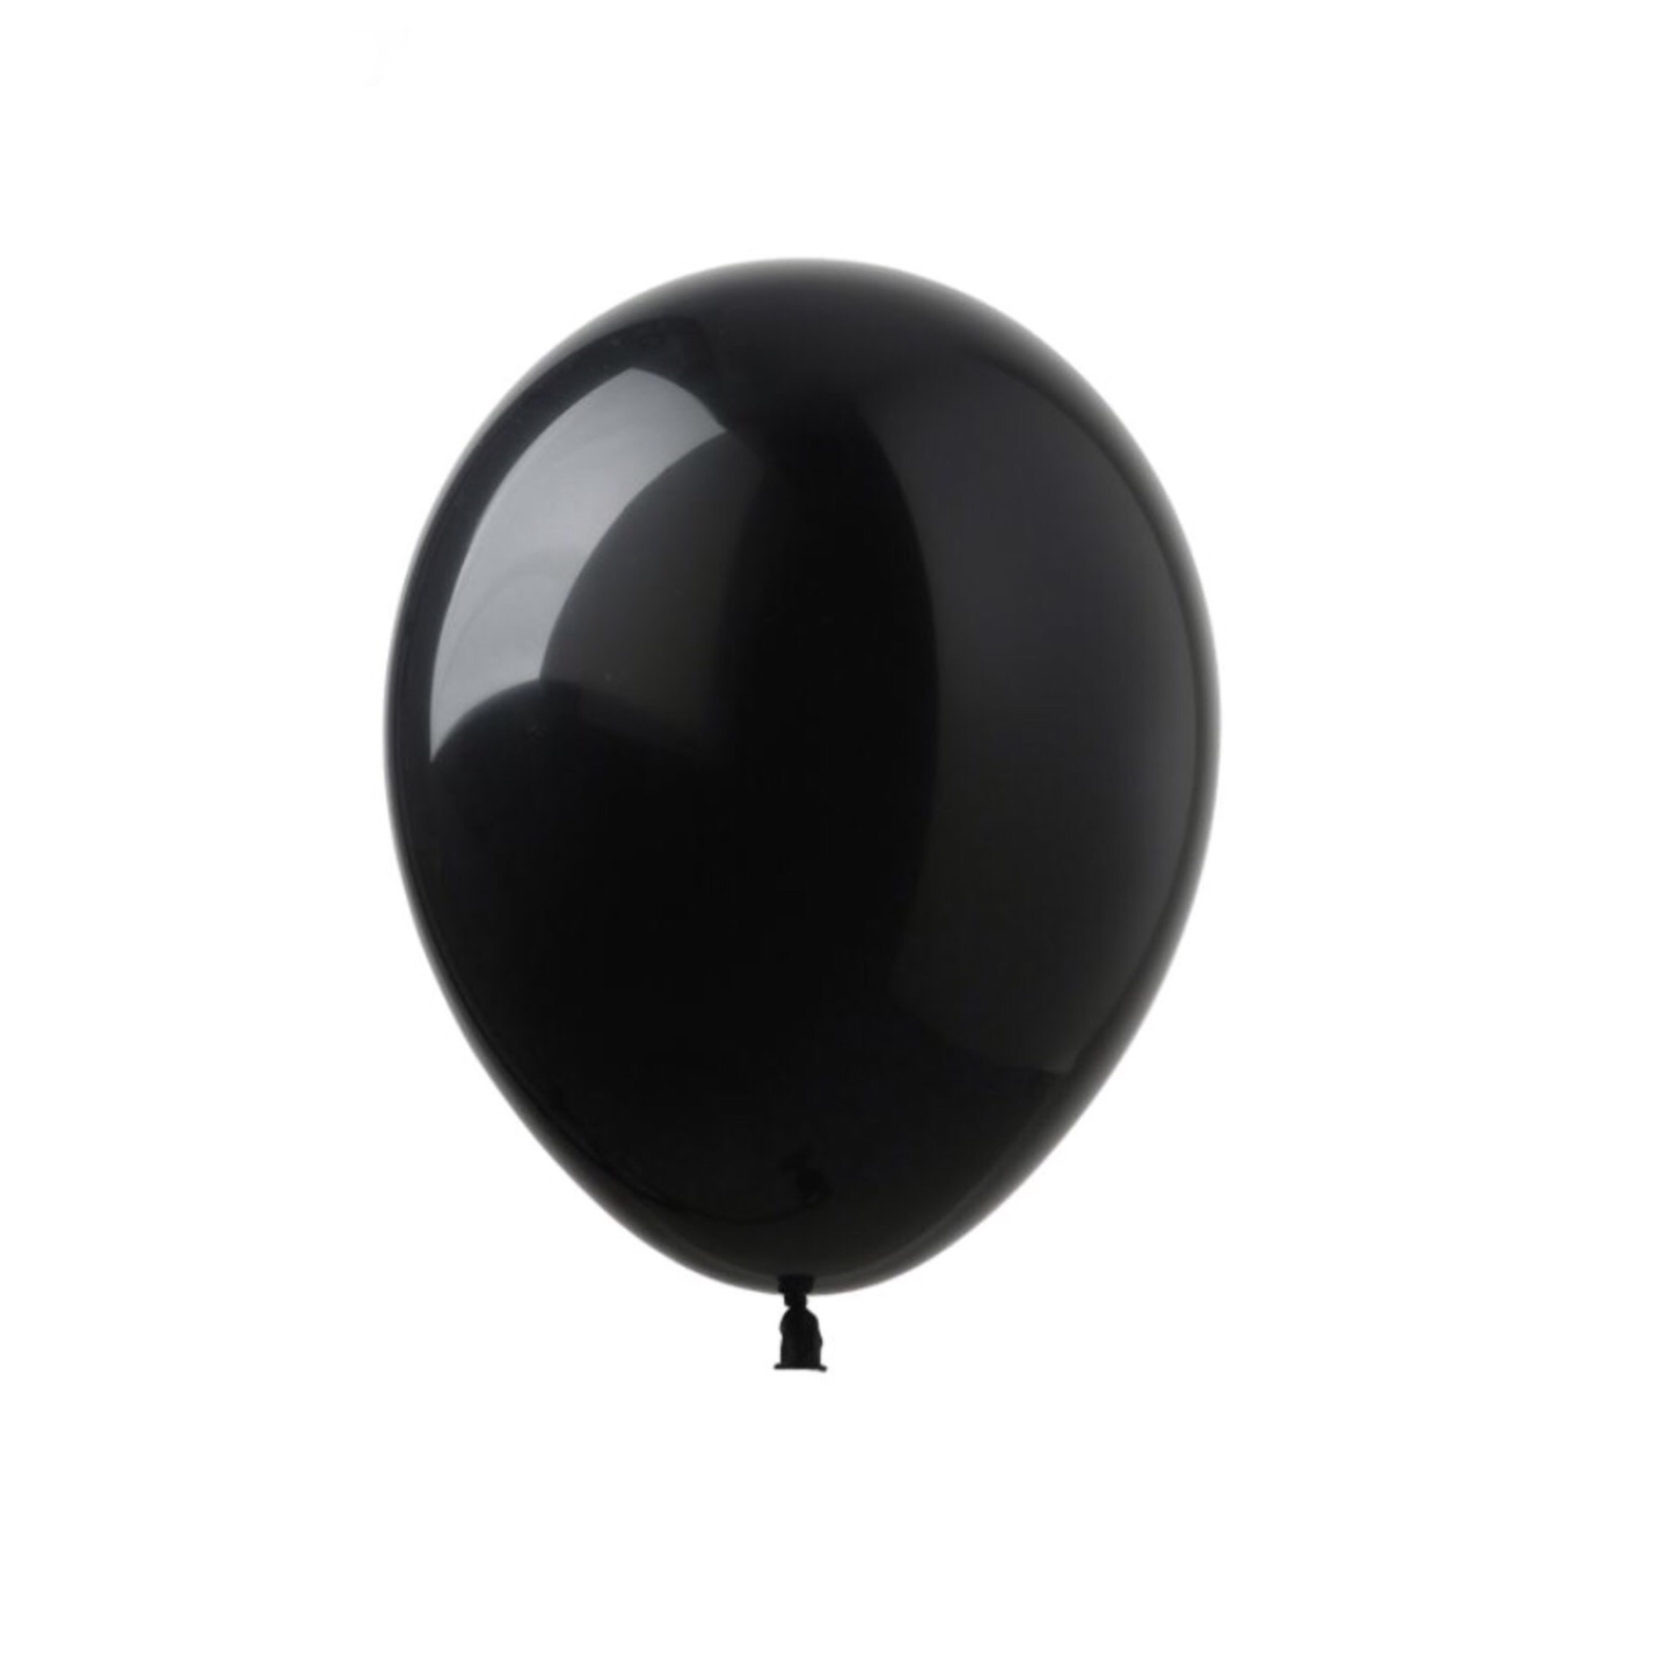 Черный шар против. “Черный шар” (the Black Balloon), 2008. Глянцевый шарик. Шар черный латексный. Черный воздушный шар.